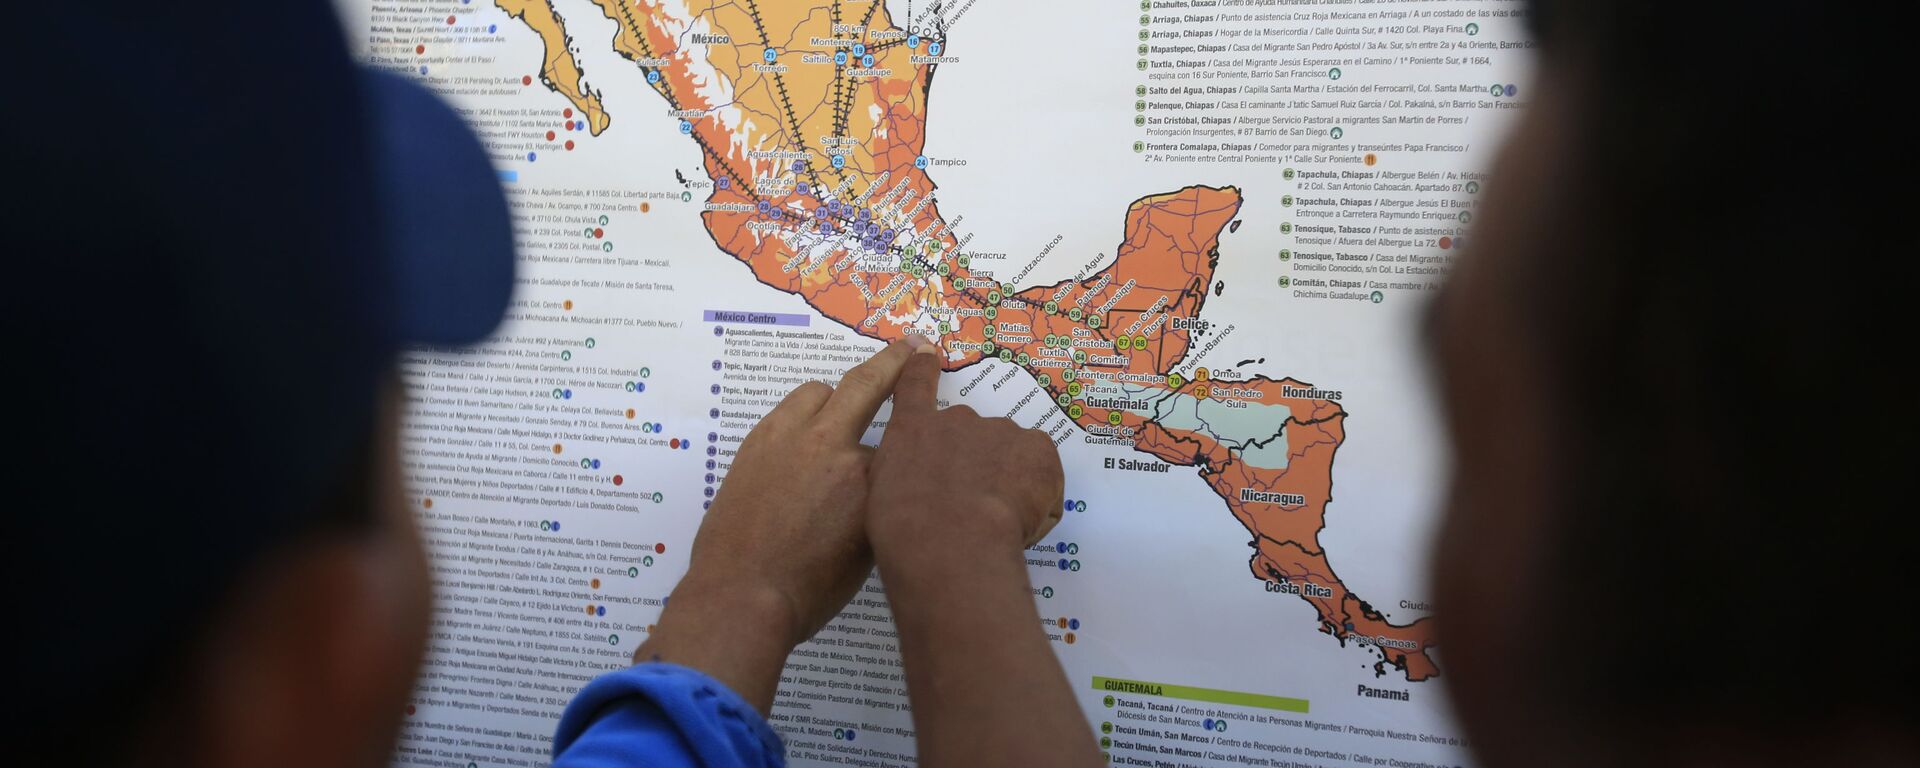 Migrantes centroamericanos planean su recorrido con un mapa en Ciudad de México - Sputnik Mundo, 1920, 29.07.2021